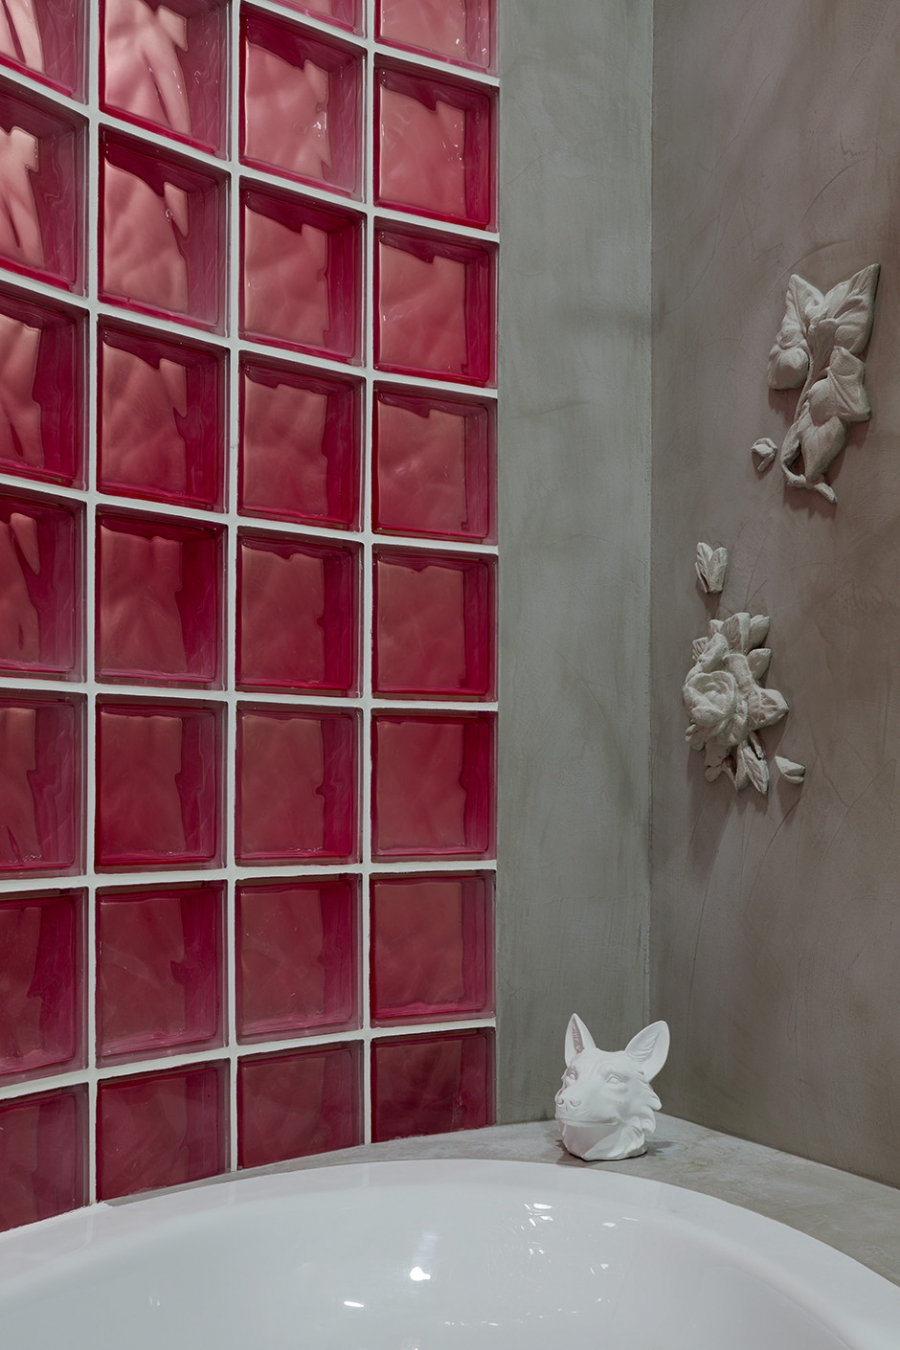 Phòng tắm của một đạo diễn tại Moscow (Nga) tuy không quá rộng rãi nhưng lại bắt mắt nhờ những khối kính màu đỏ như những quả cherry chín mọng. Lúc này, bức tường không chỉ phân vùng phòng tắm với hành lang bên ngoài mà còn là yếu tố trang trí nổi bật đúng không nào?